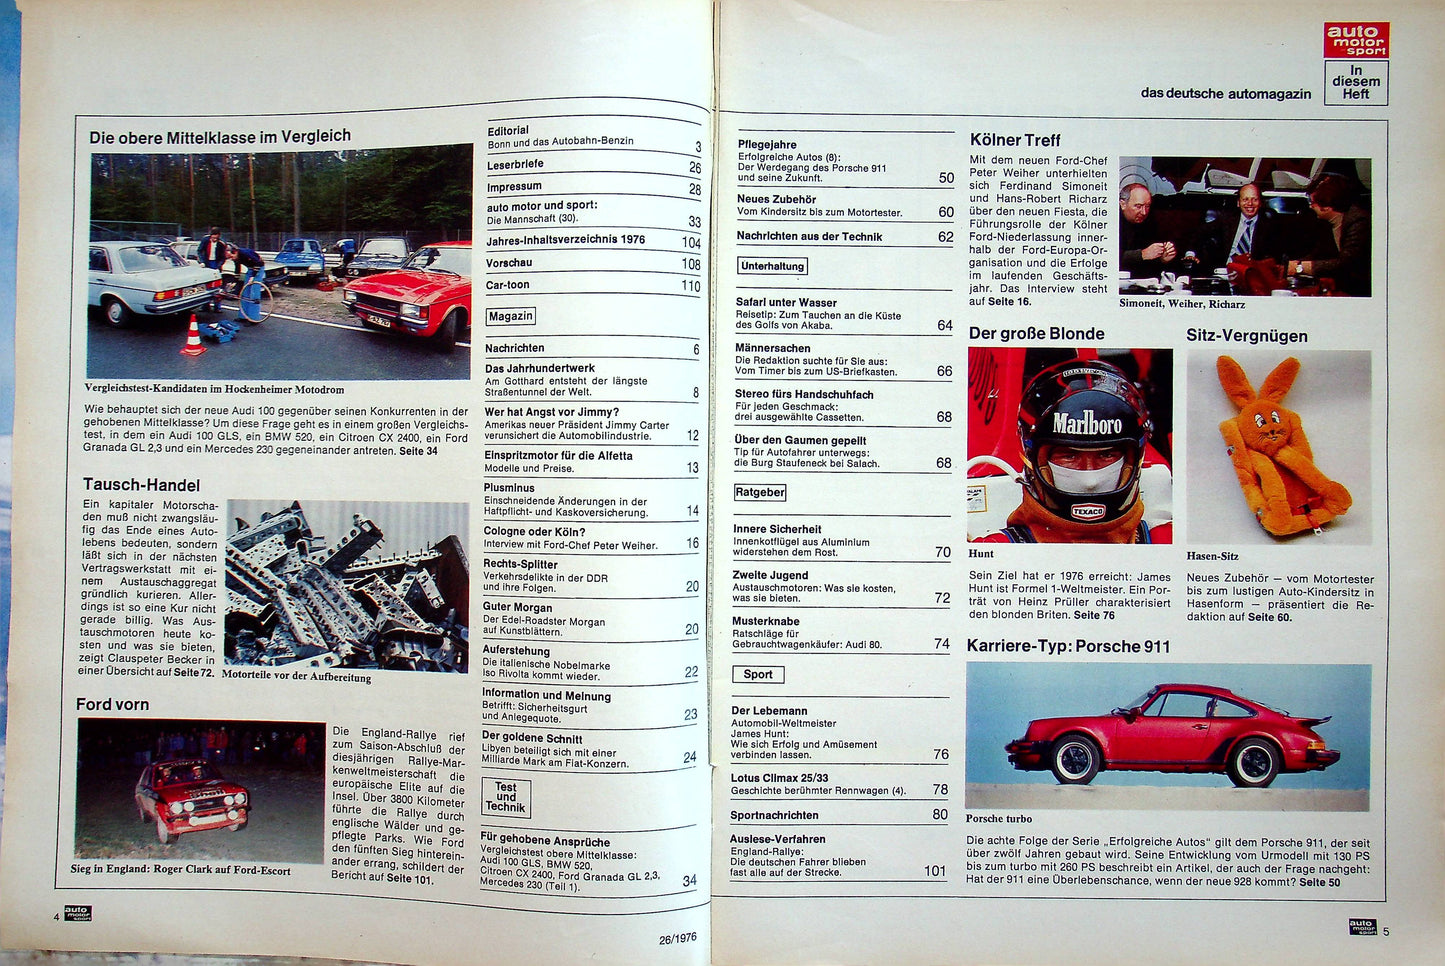 Auto Motor und Sport 26/1976